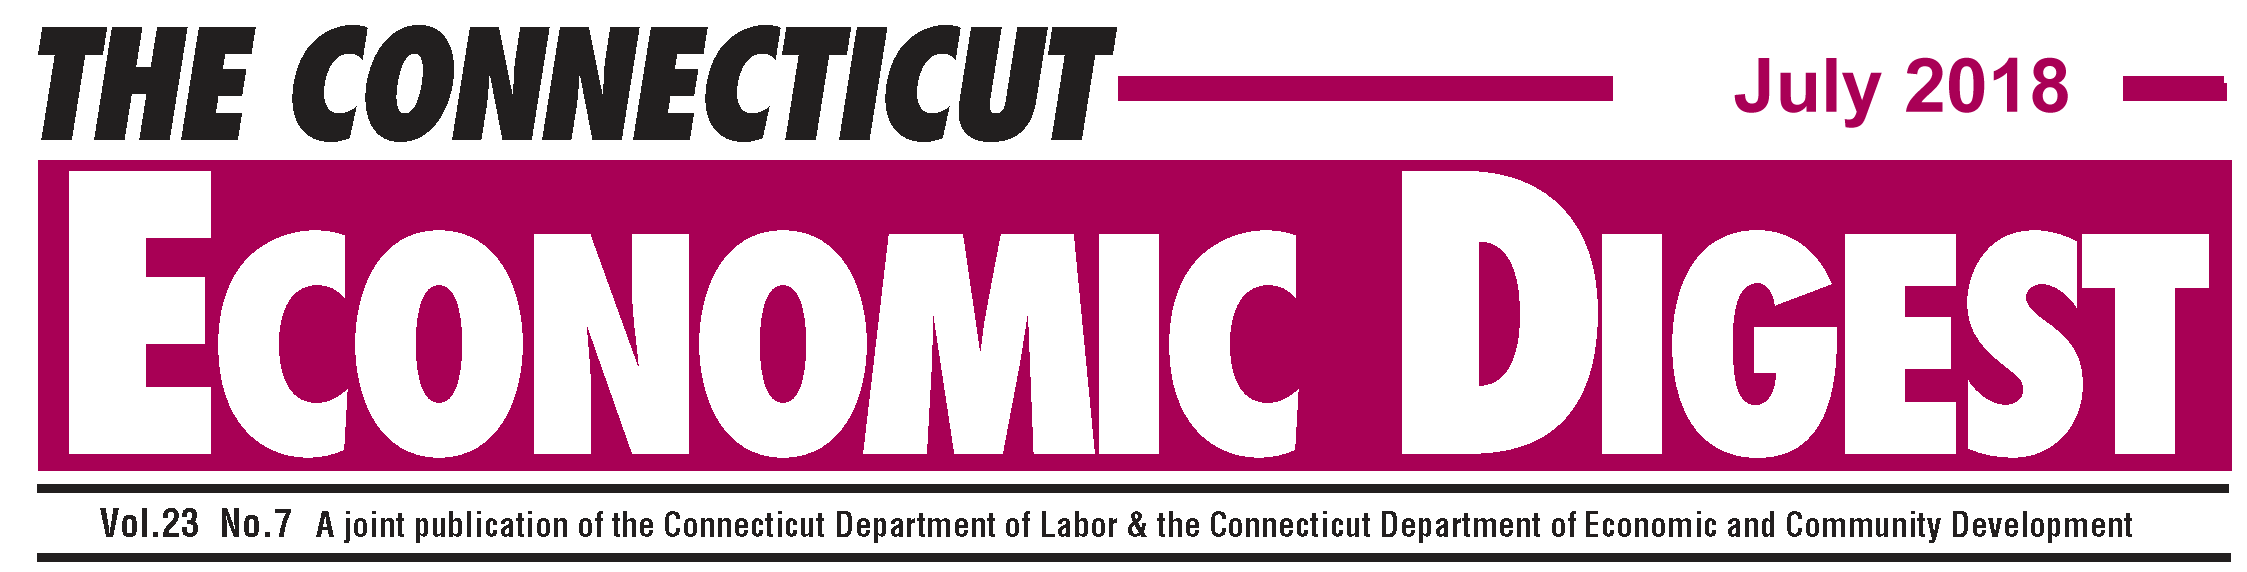 July 2018 Connecticut Economic Digest